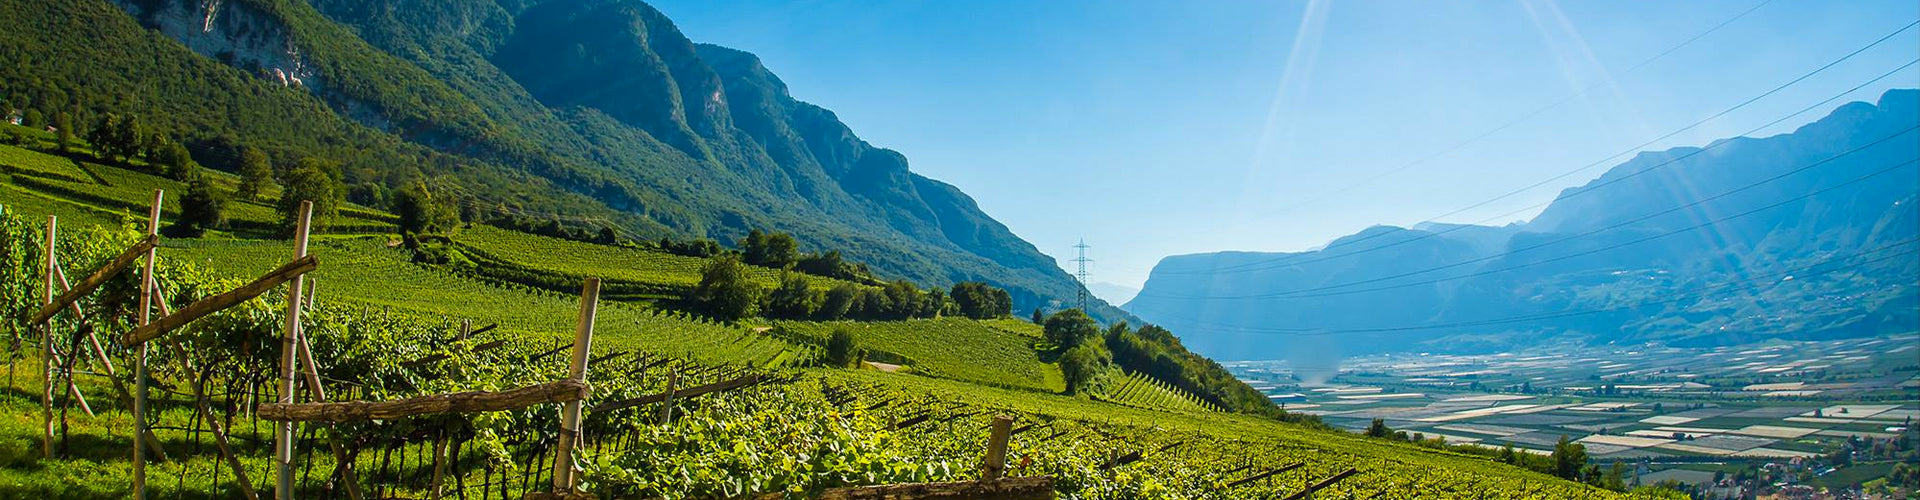 Vineyards of Tenuta J Hofstätter in the Alto Adige region of Italy